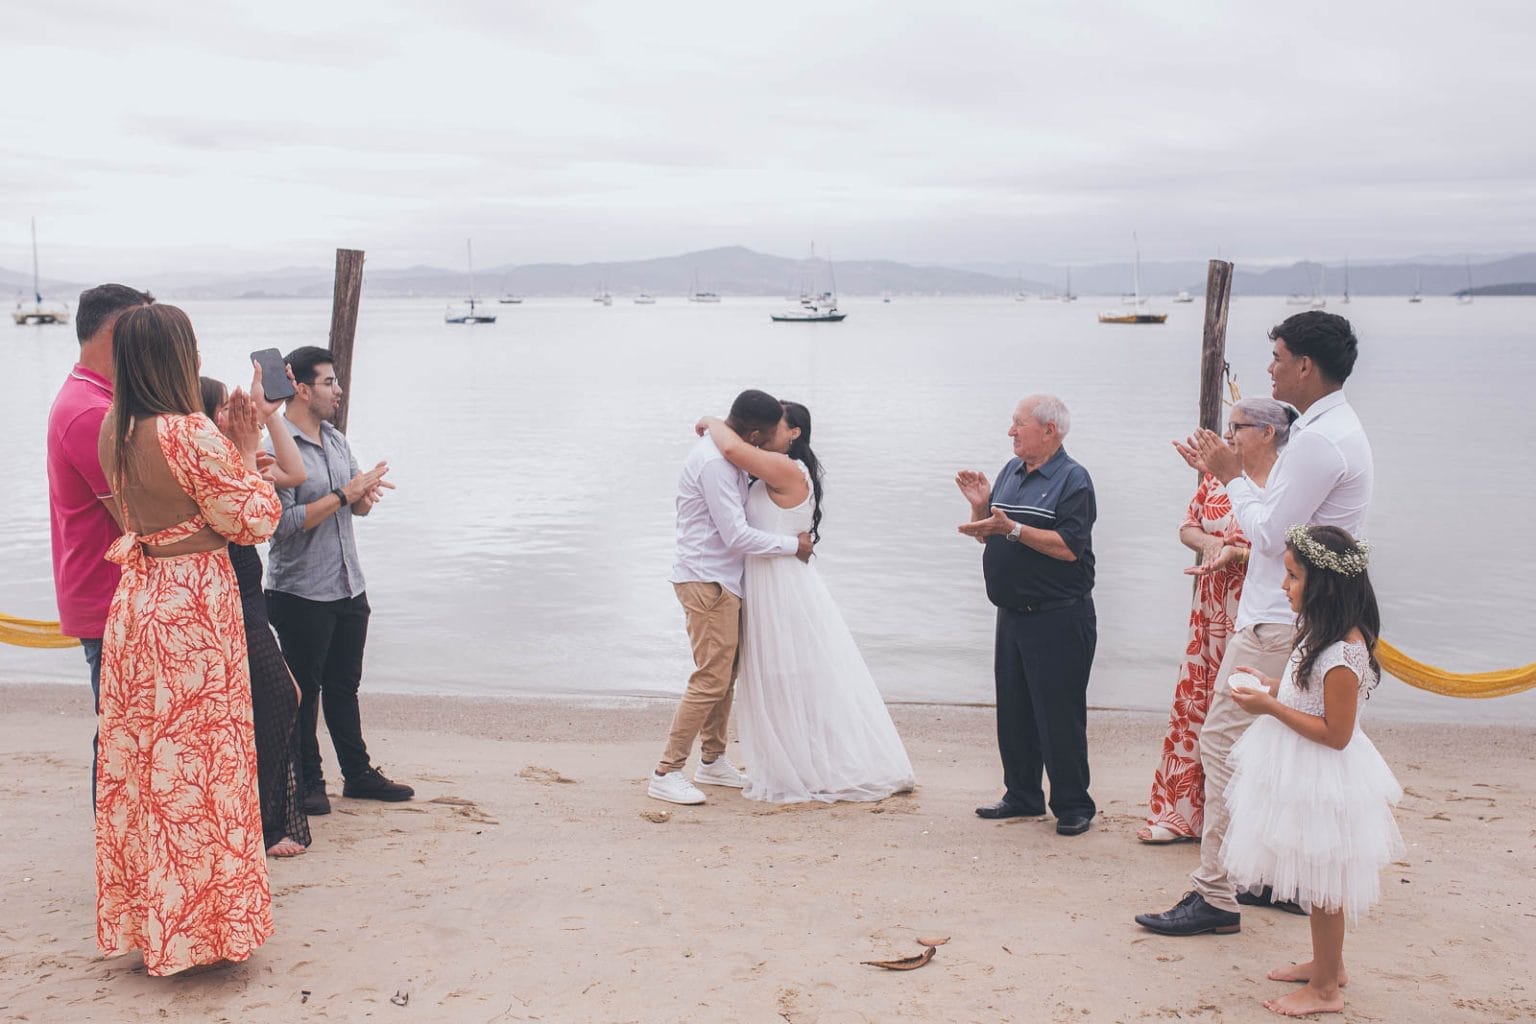 casamento na praia simples, o amor de pés descalços na areia, praia de santo antônio de lisboa, Florianópolis